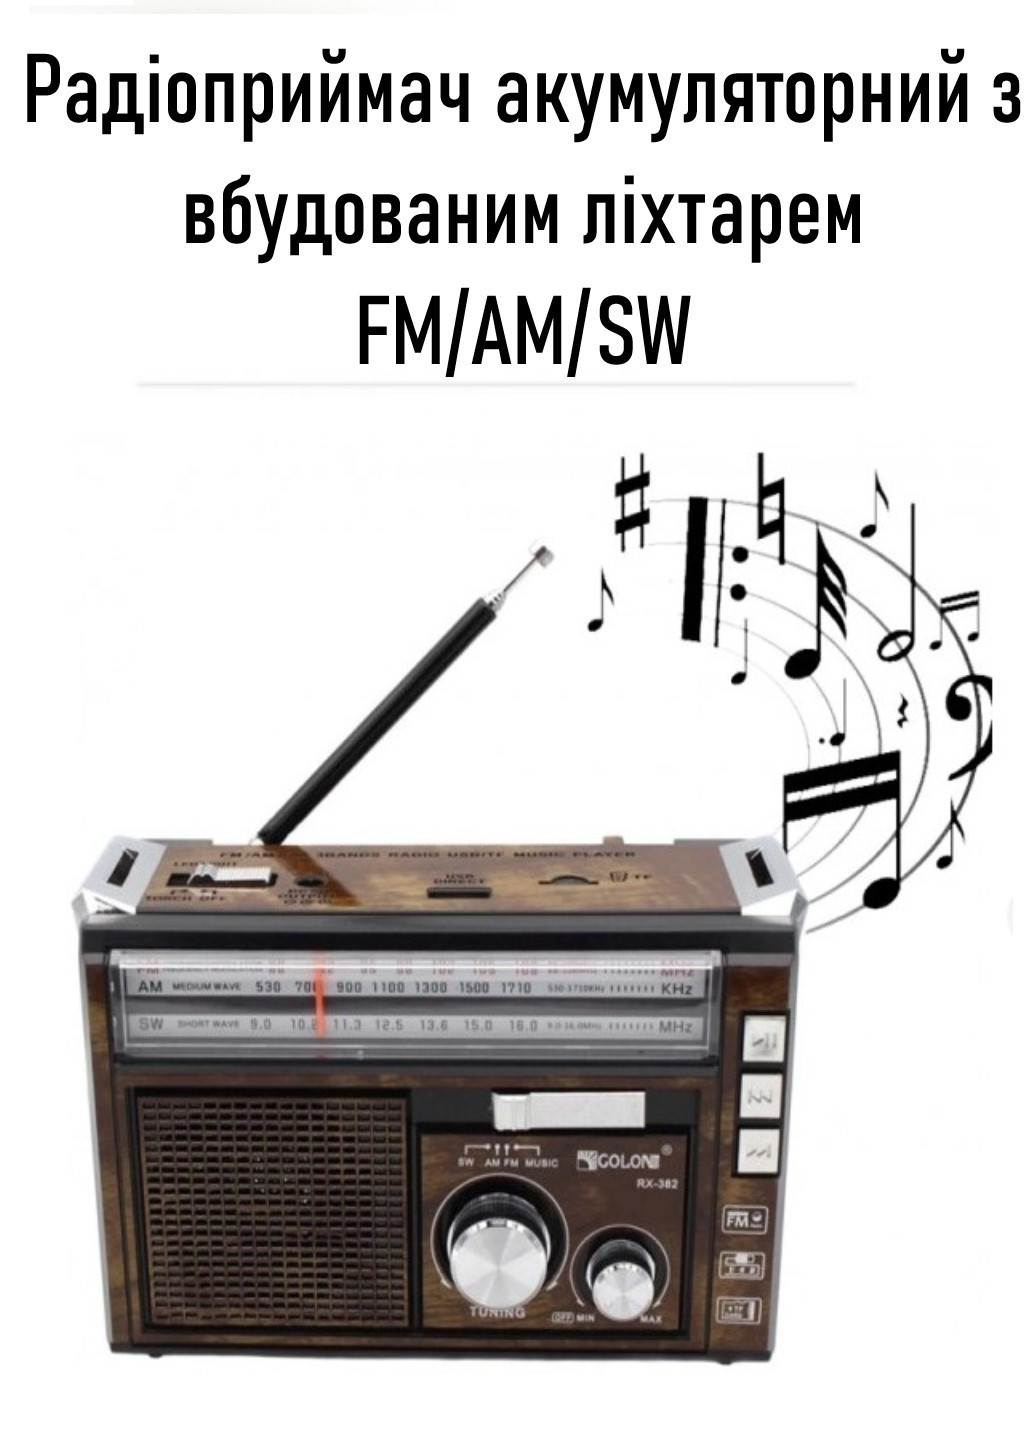 Радиоприёмник портативный аккумуляторный RX-382 Black/Red FM/AM/SW USB AUX Golon (258599393)